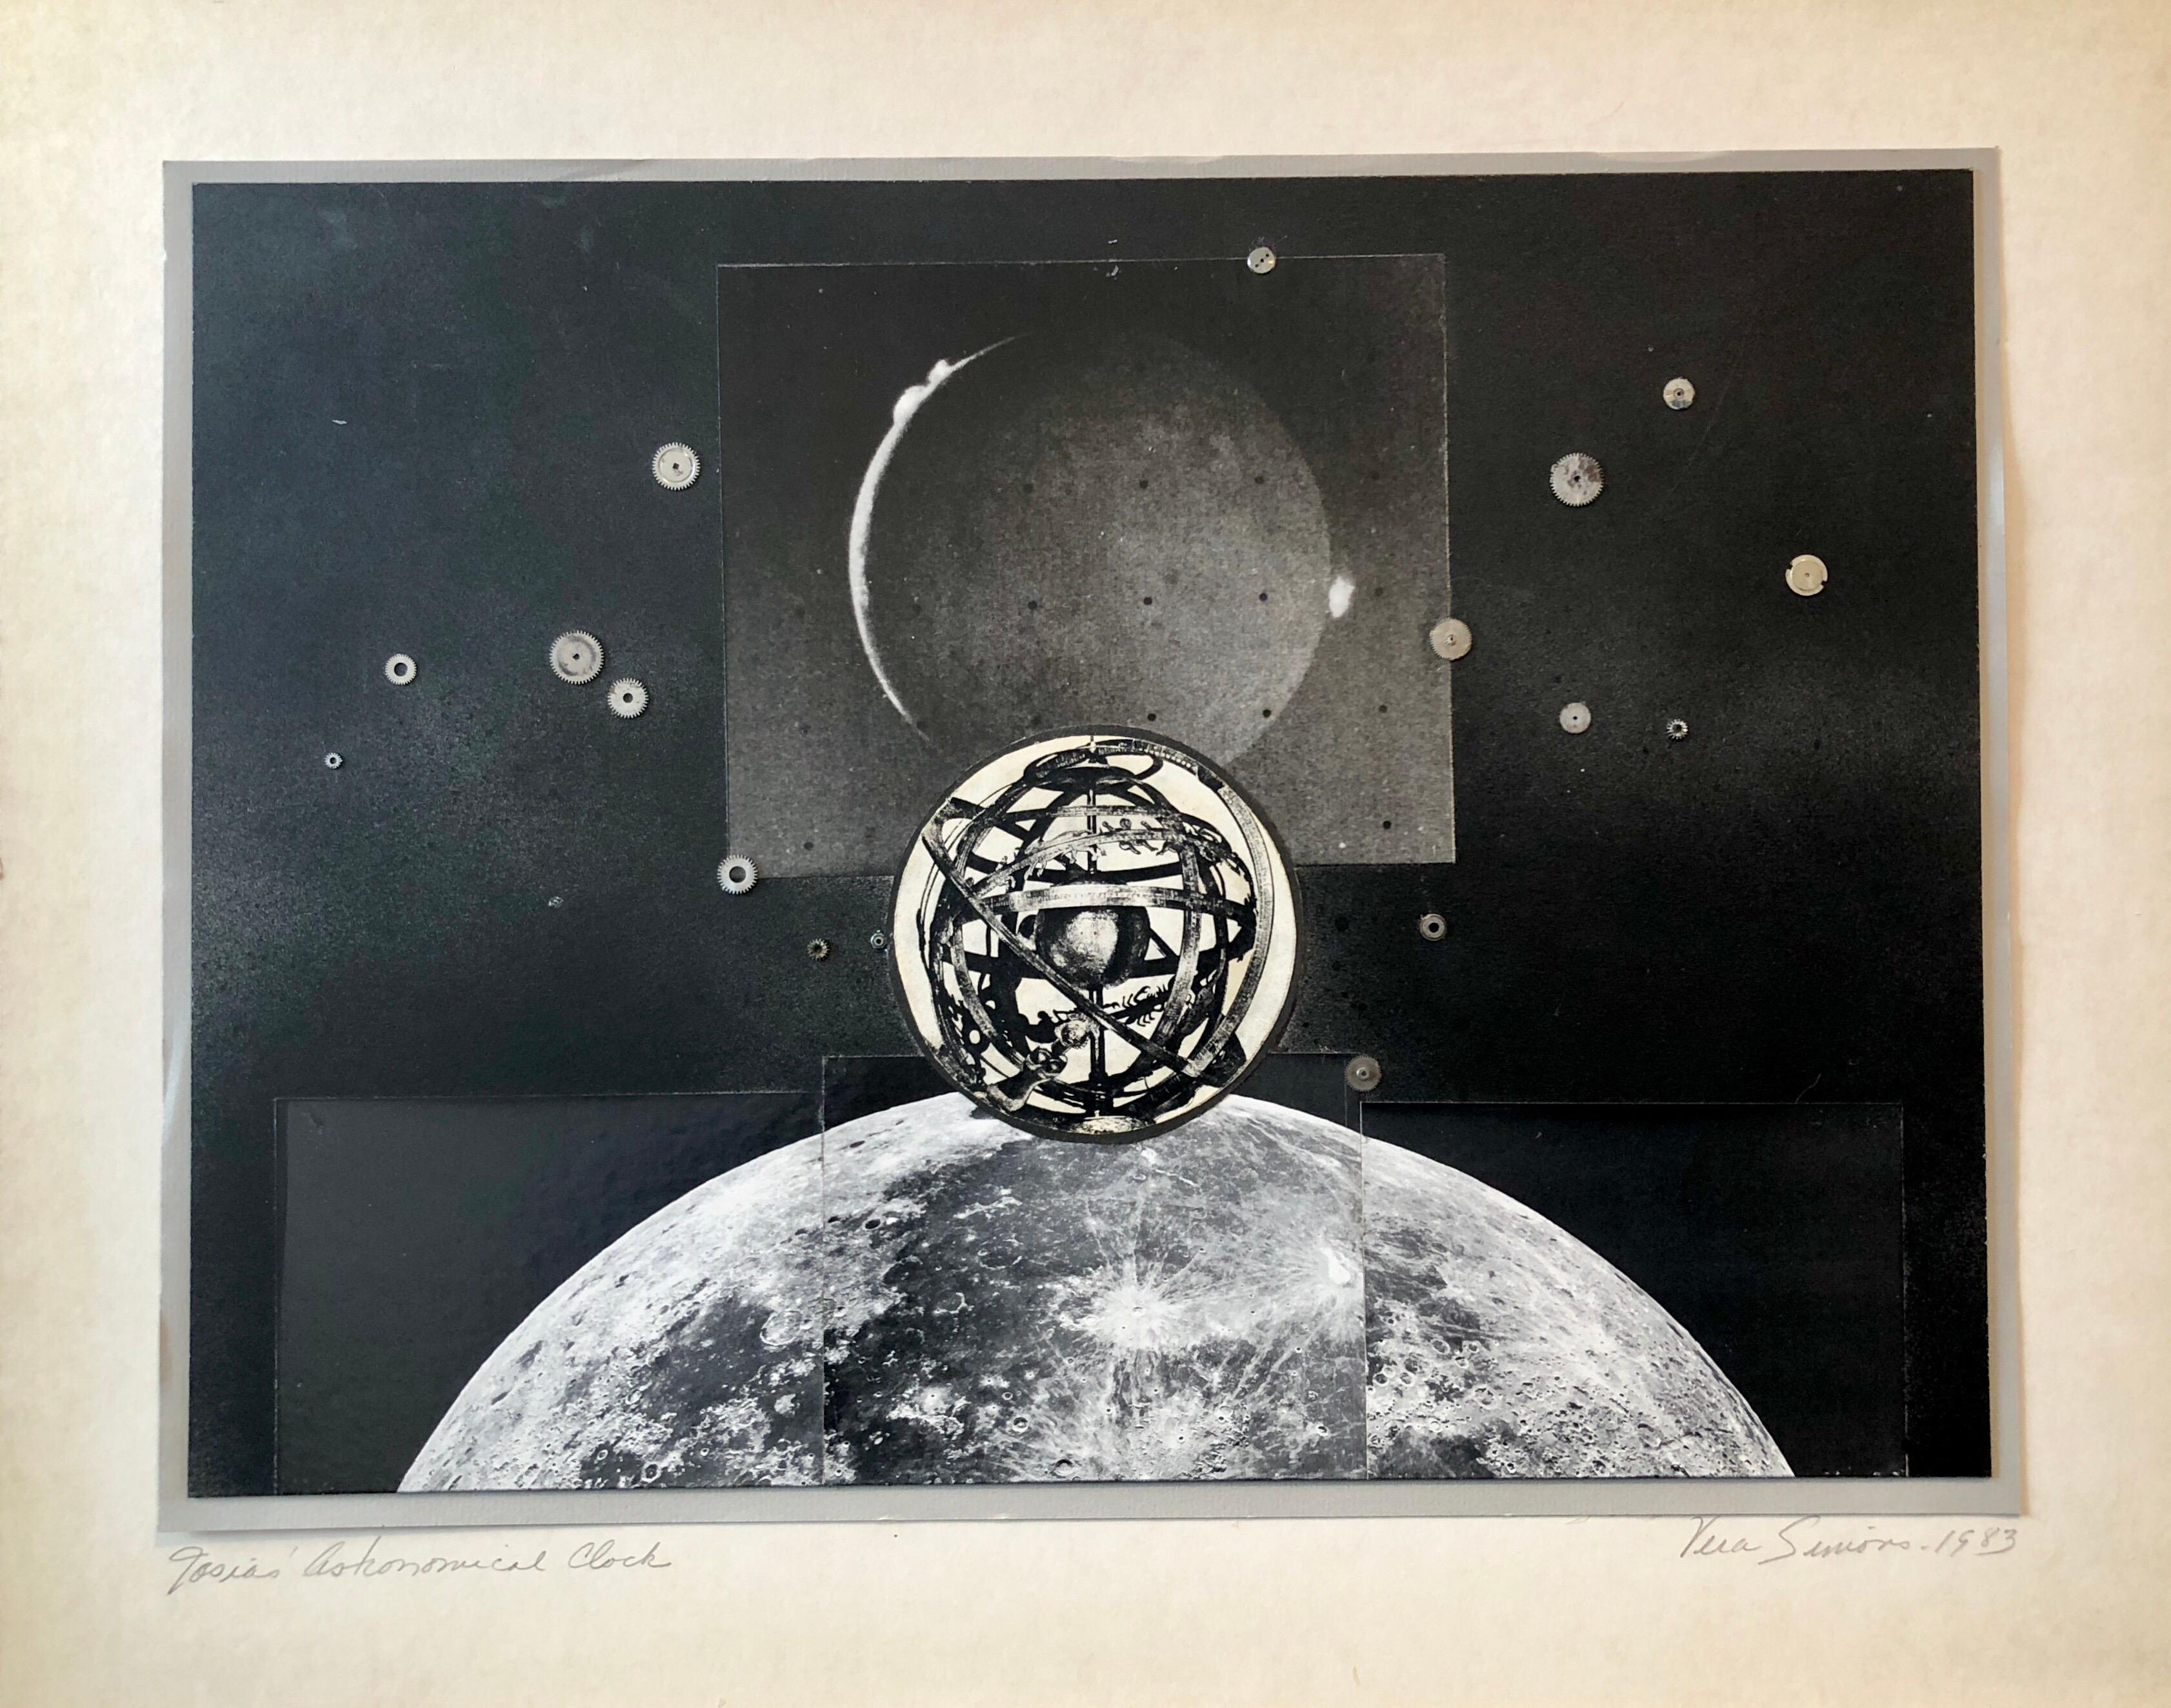 Vera Simons Landscape Photograph - Josias Astronomical Clock Watch Parts Assemblage Photo Planet Collage Photograph